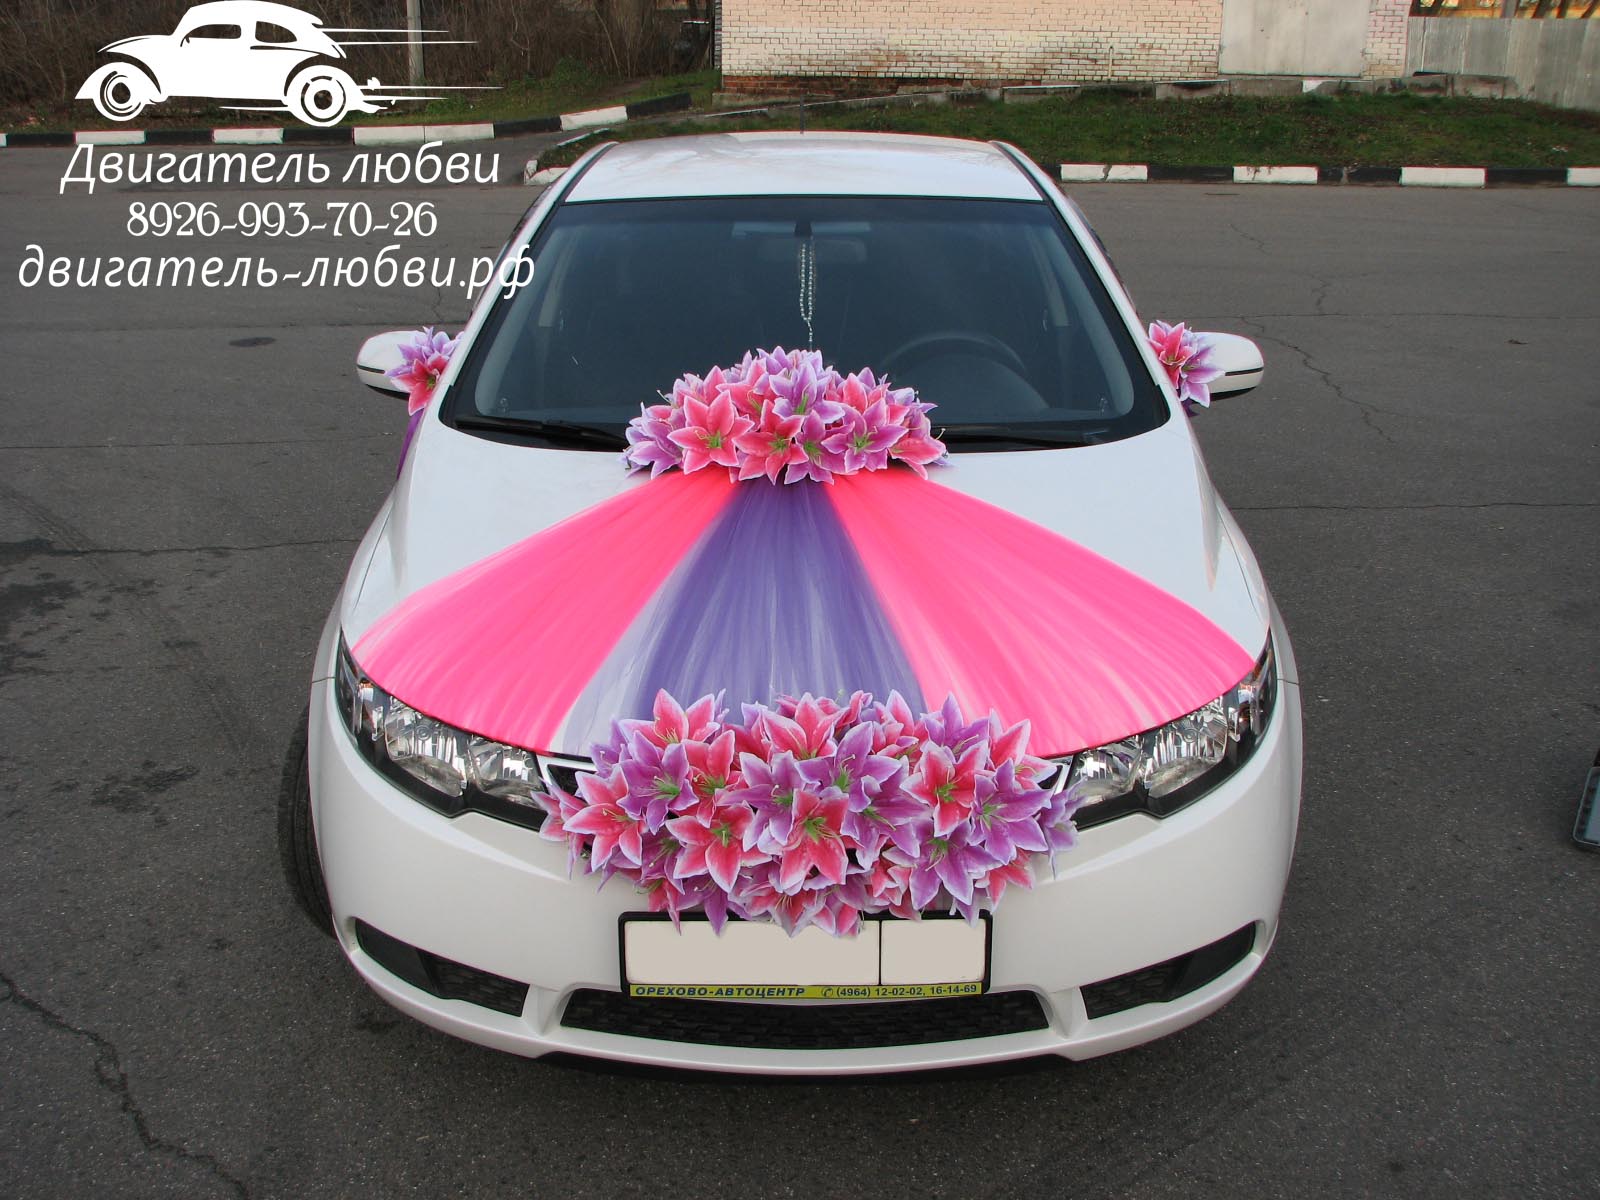 Фатин для украшения машины на свадьбу сочетания цветов